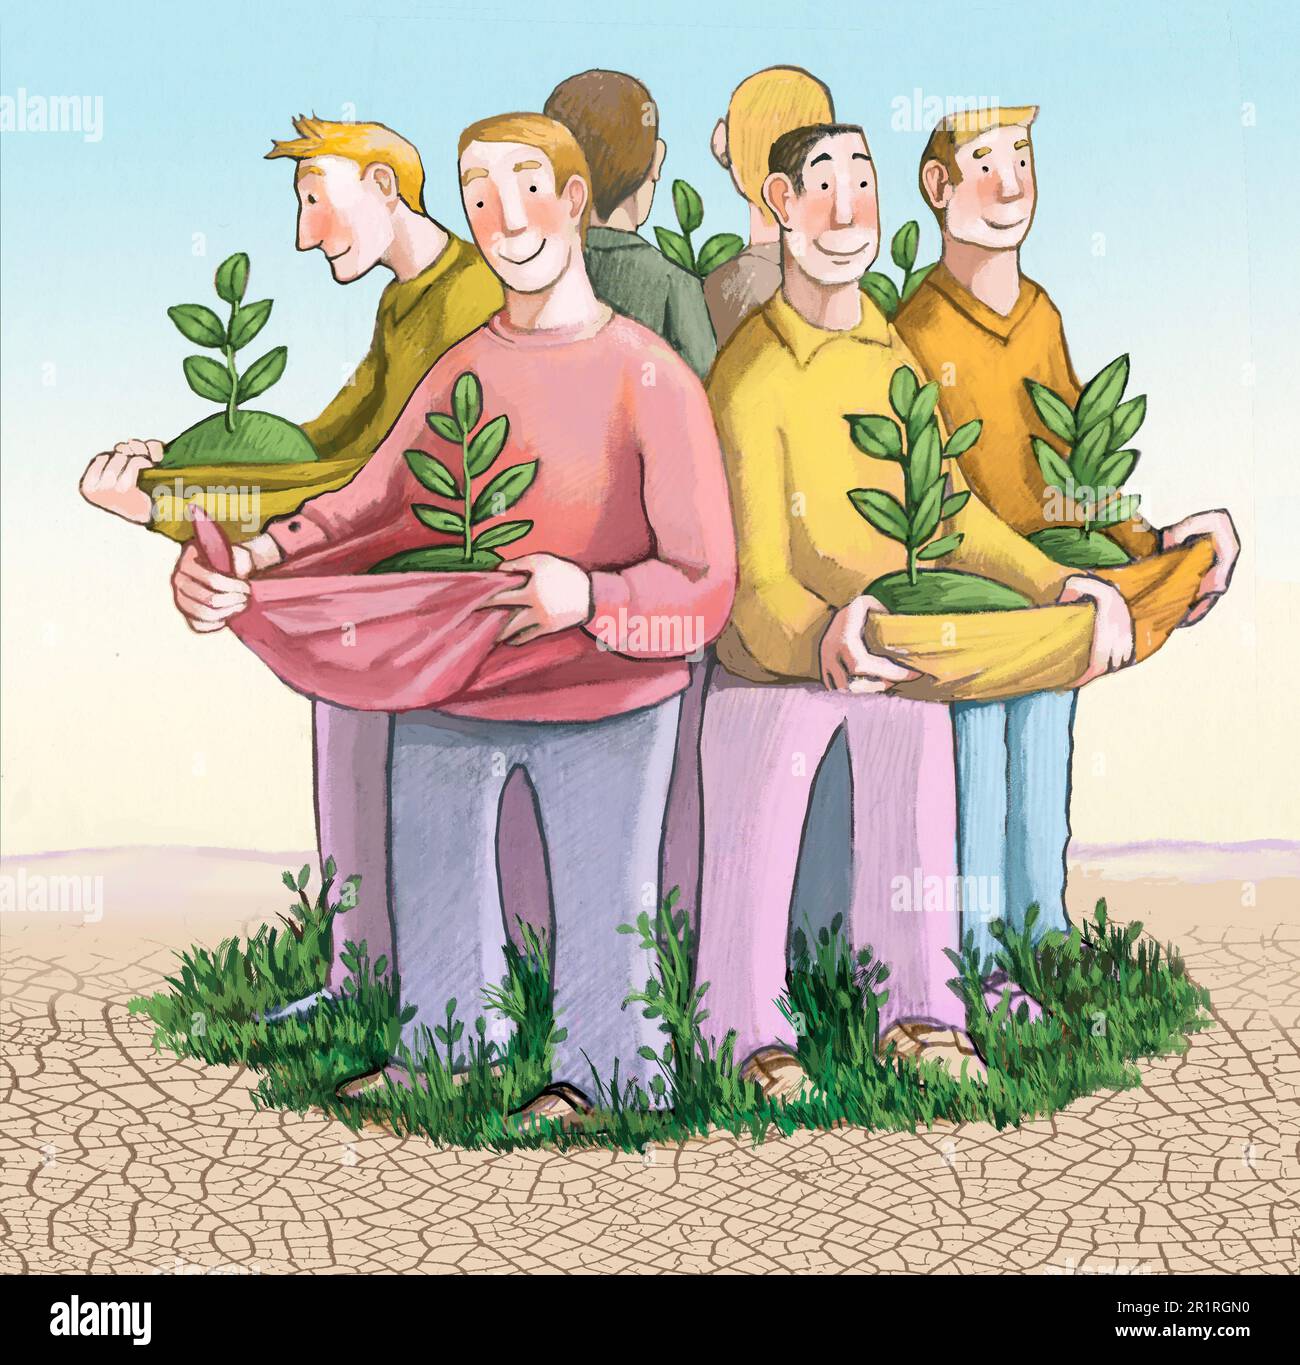 Männer in einem Kreis halten Pflanzen in den Armen, lassen das Grün mitten in der Wüste wieder wachsen, eine Metapher für die Stärke der ökologischen Assoziationen Stockfoto